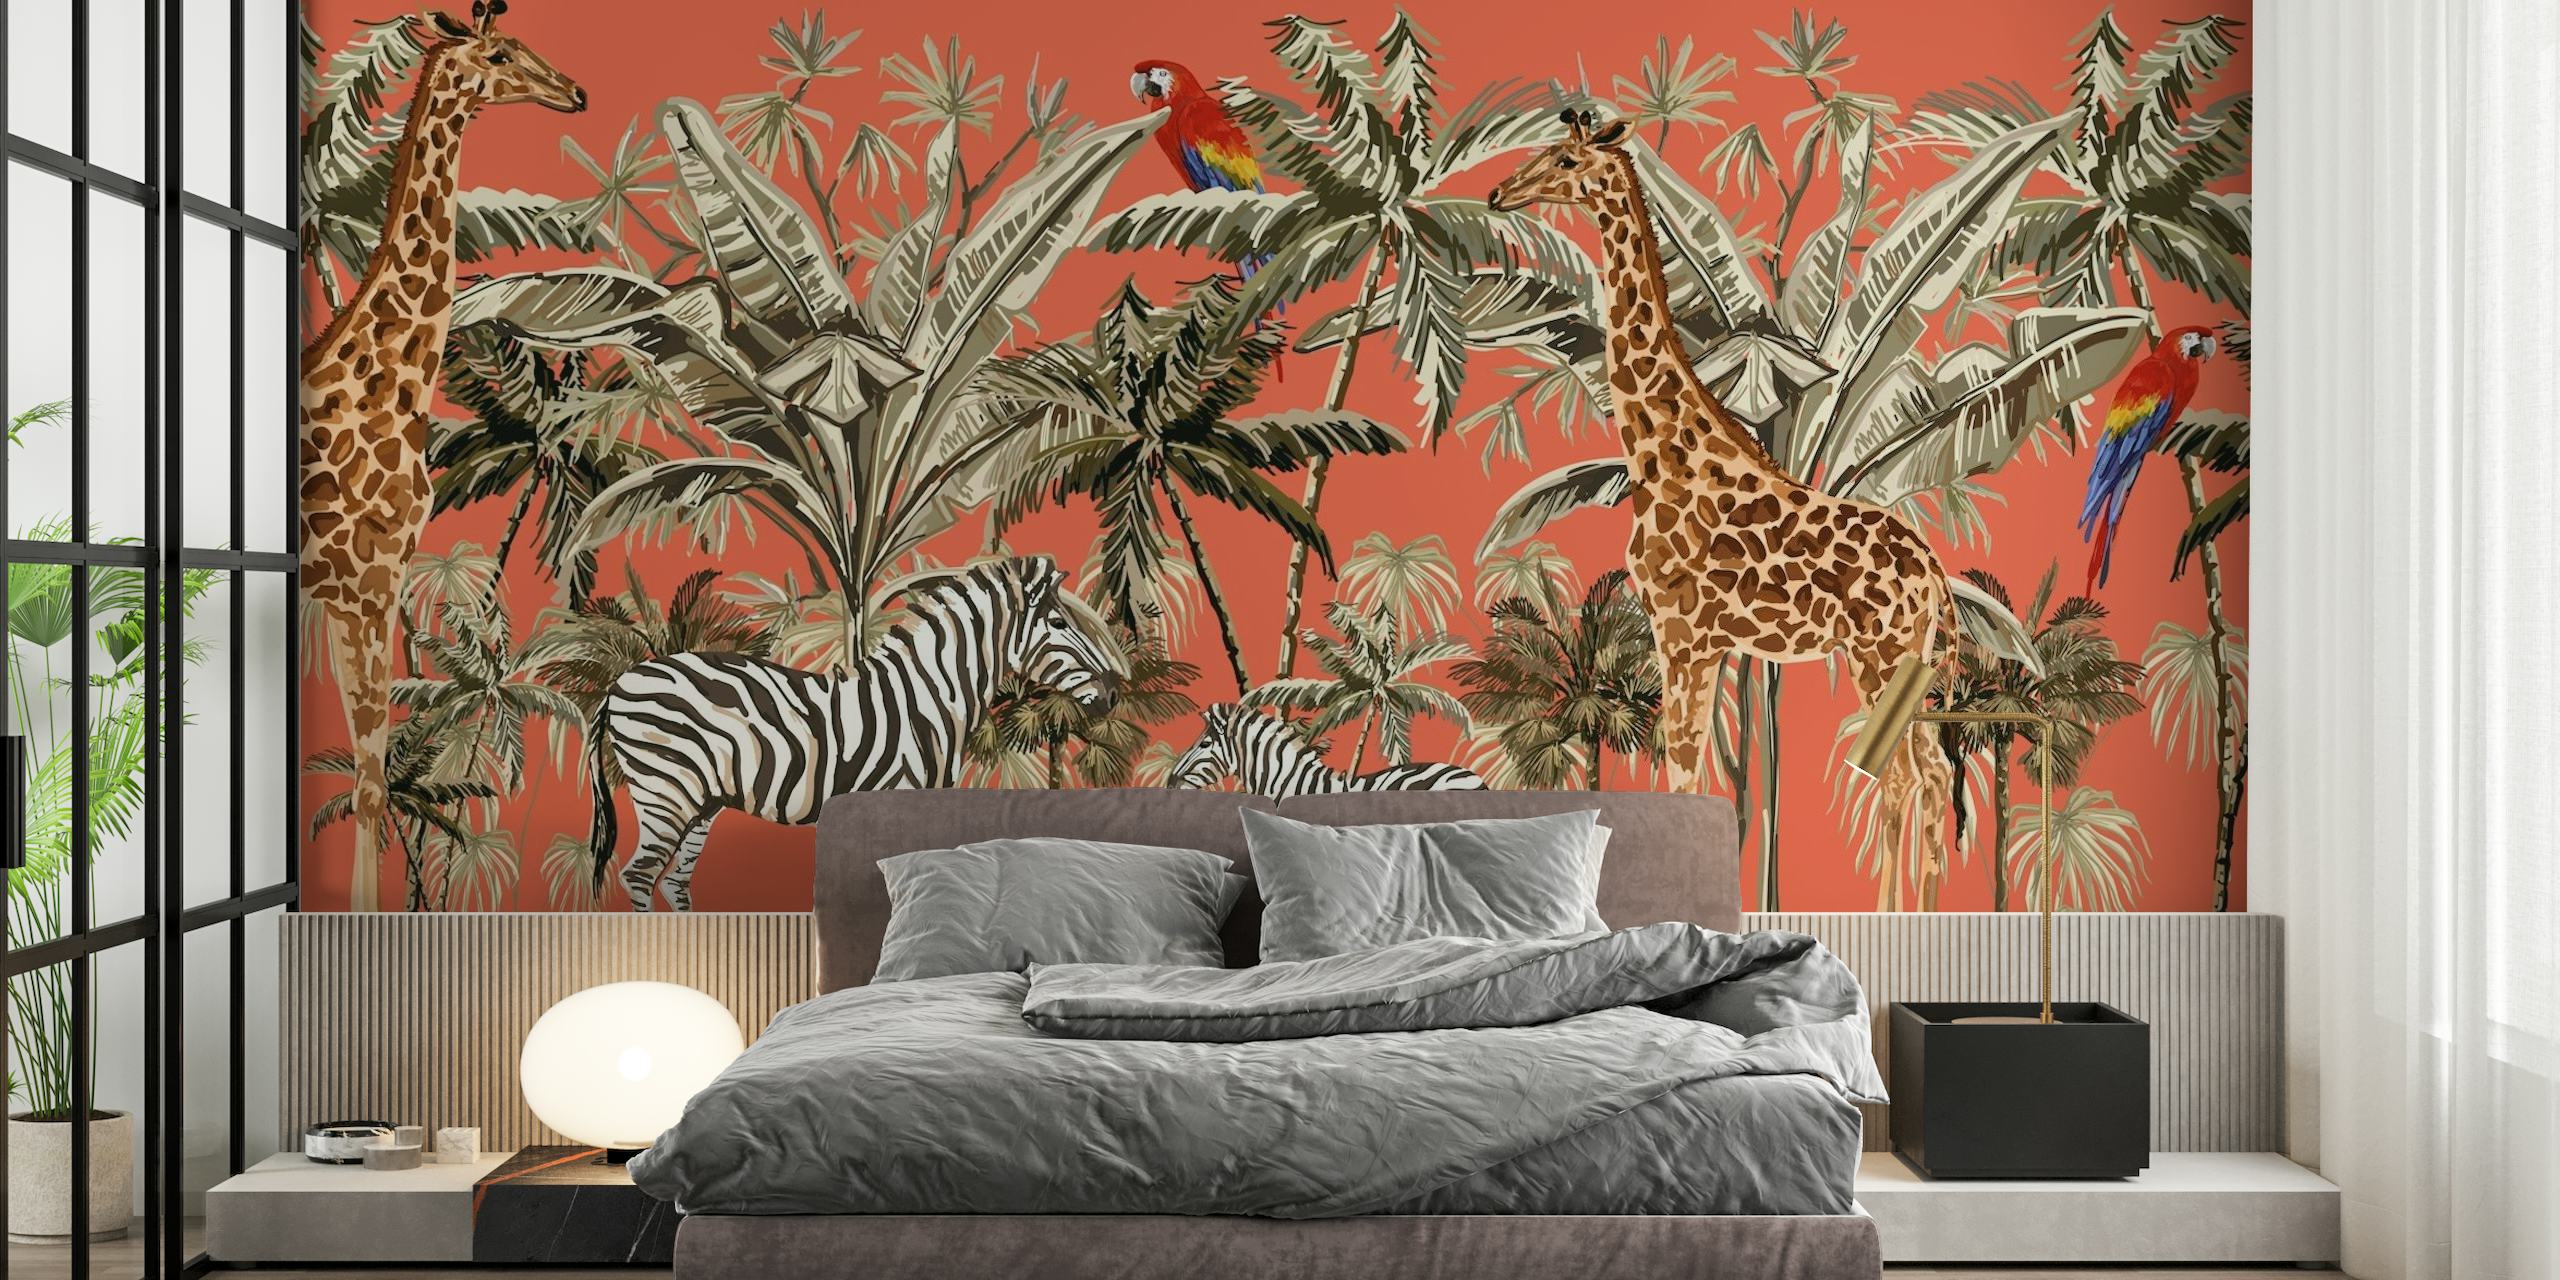 Carta da parati ispirata al safari con zebre, giraffe e uccelli su sfondo arancione